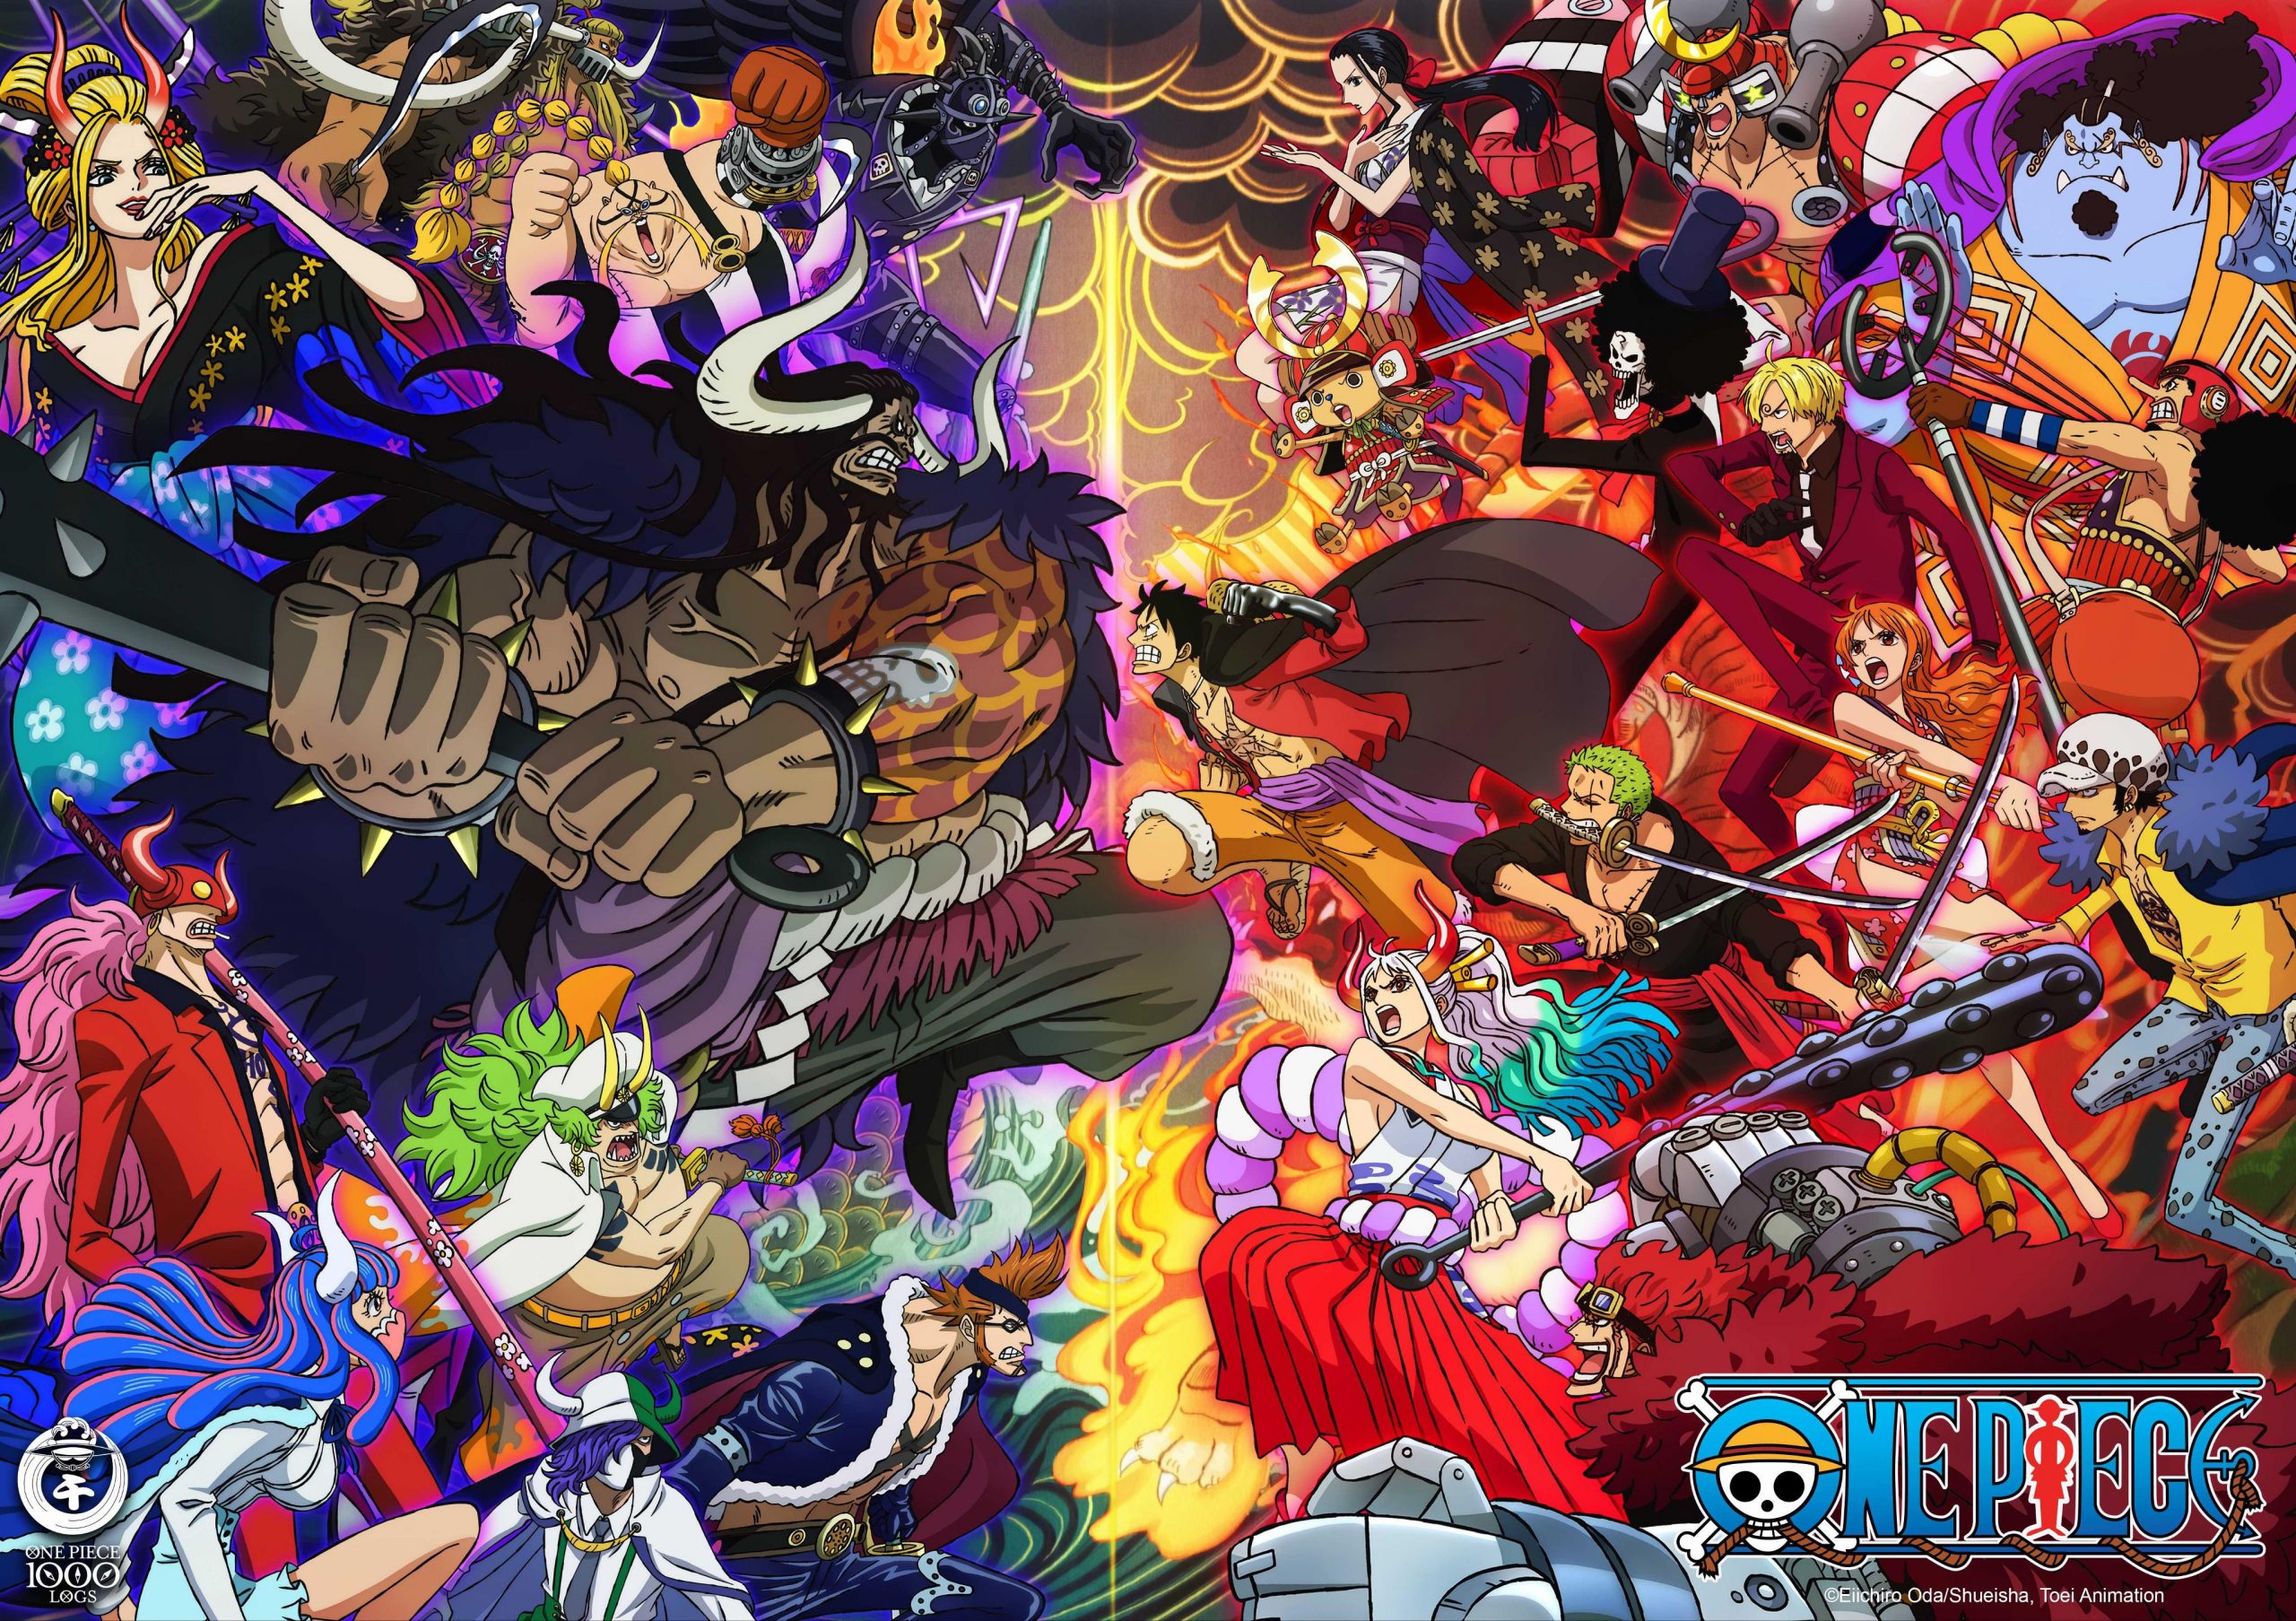 Will Kuma Die In One Piece?